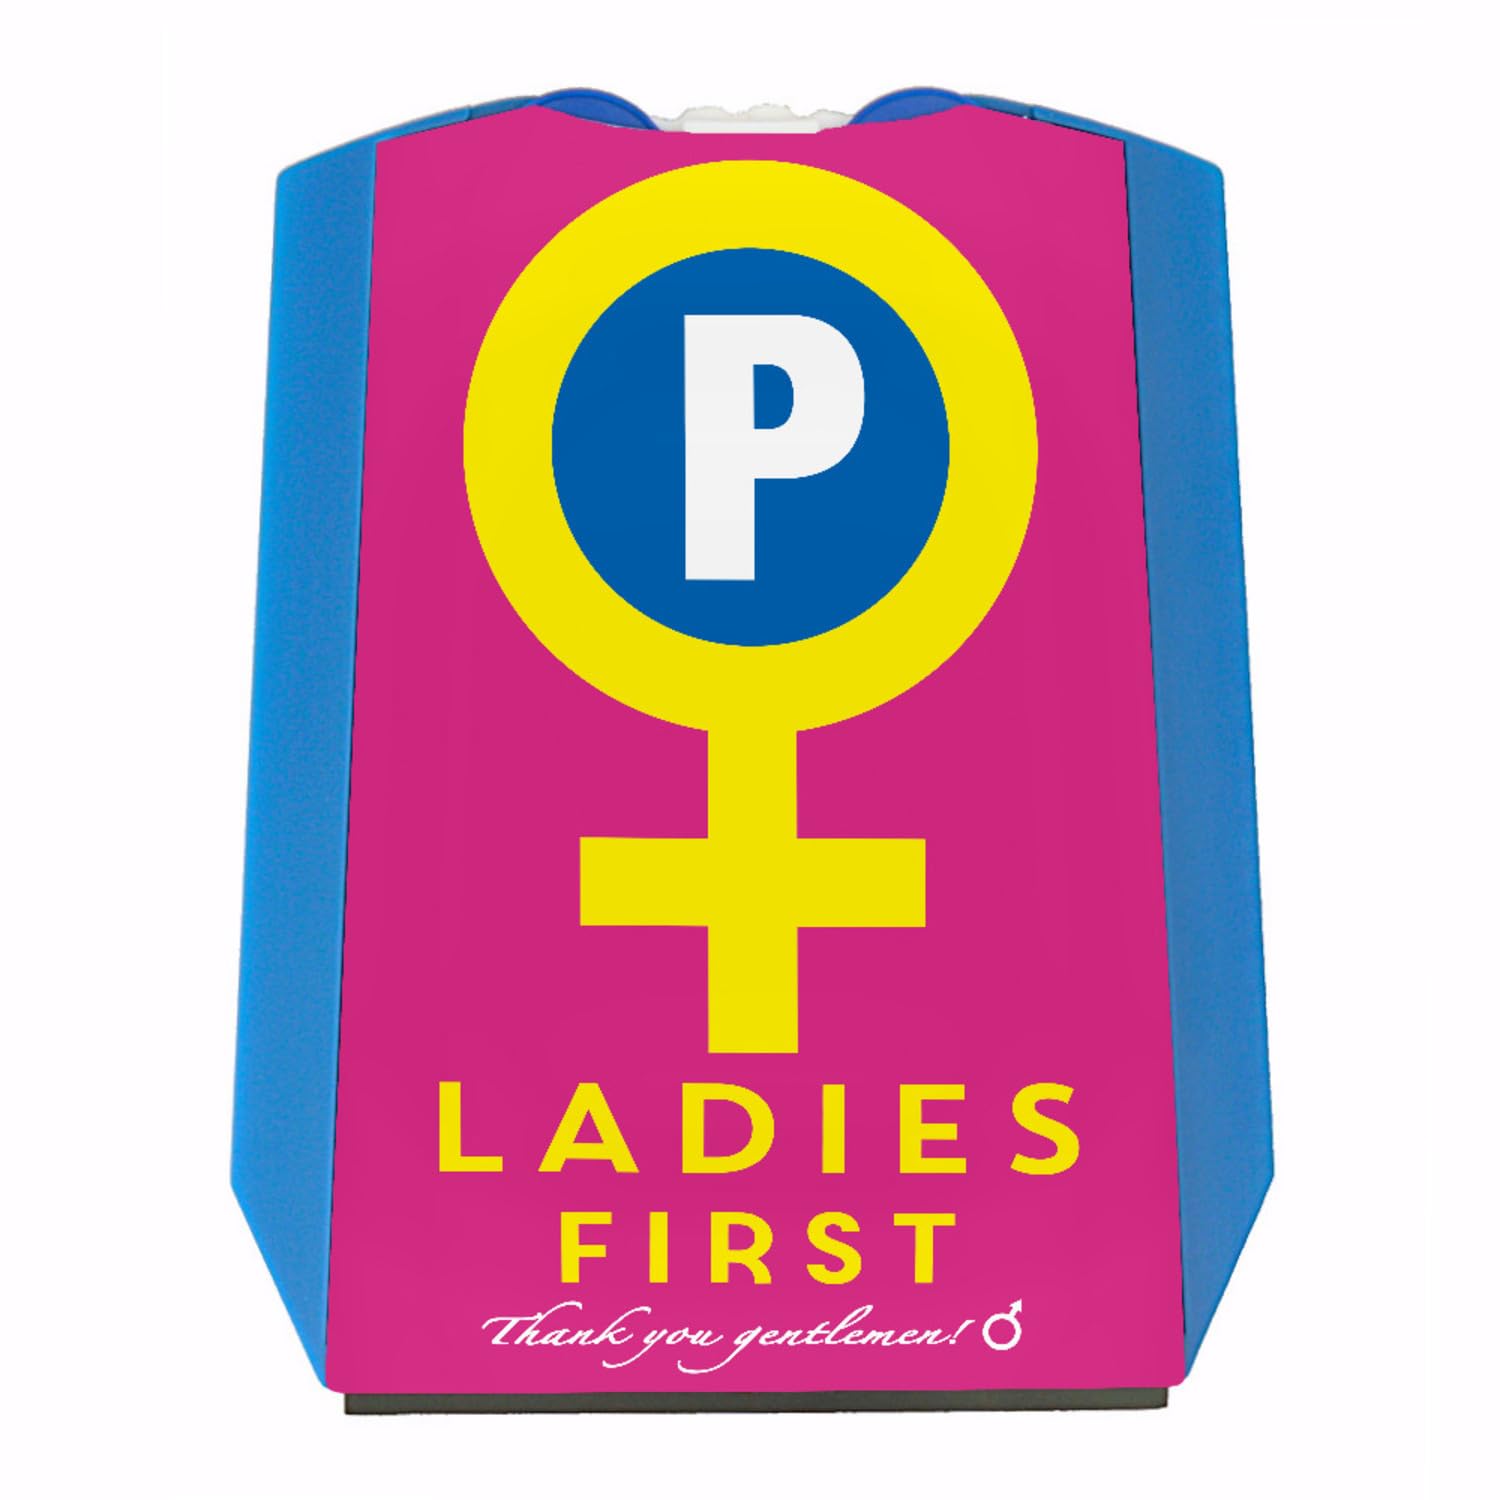 Venussymbol Ladies First Parkscheibe in Pink-Gelb mit 2 Einkaufswagenchips Eiskratzer Wasserabstreifer und Einkaufswagen-Chips Ladies parken Auto Parkplatz Parkhaus von speecheese